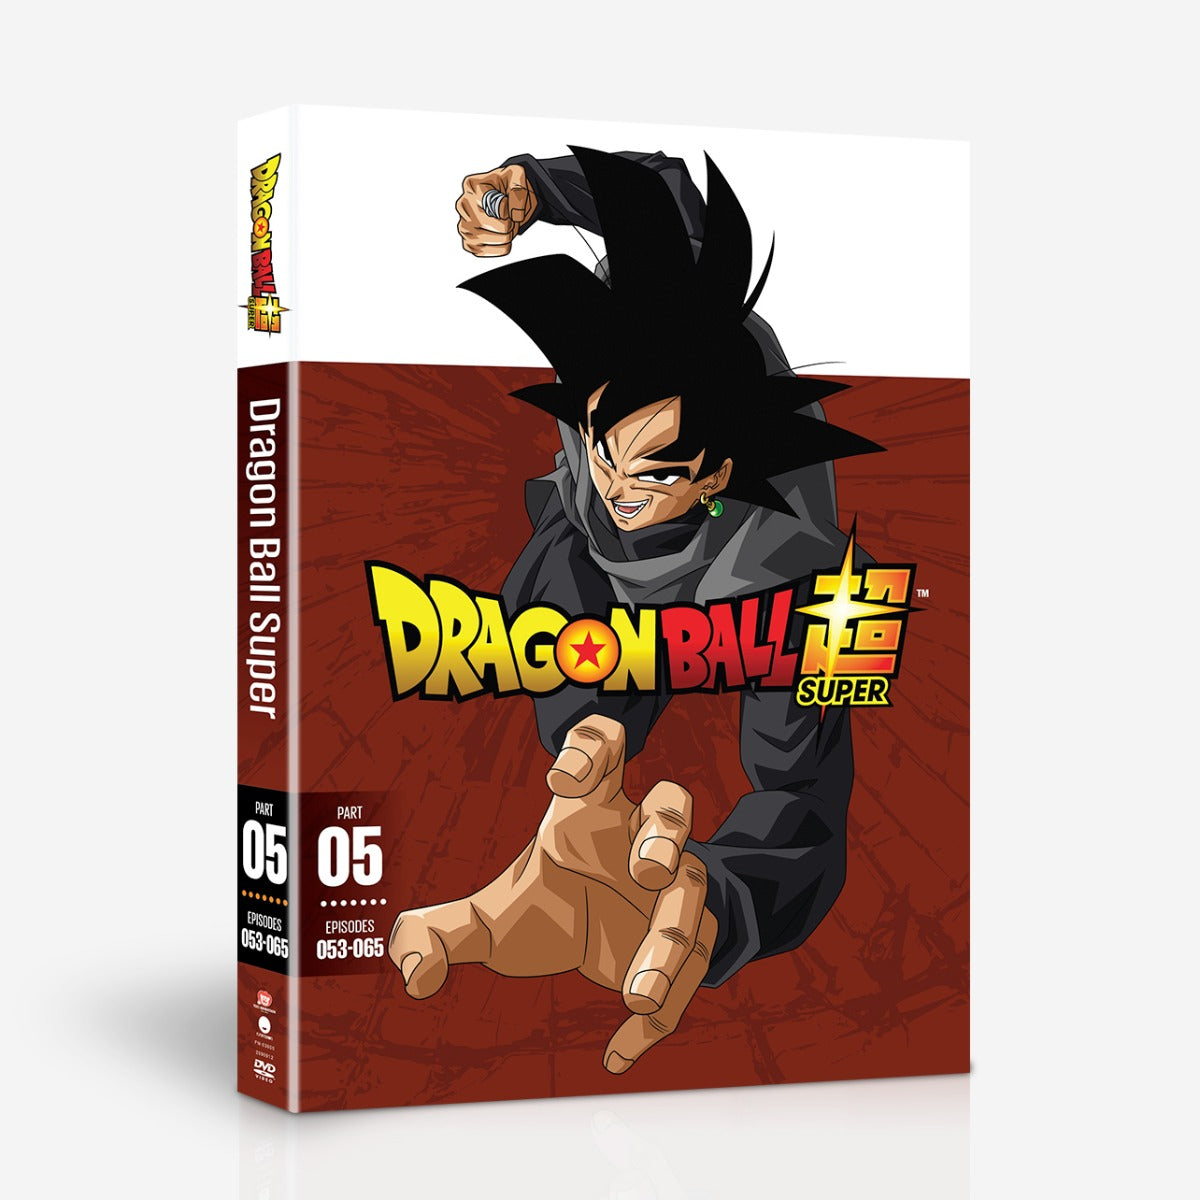 Boda Minero Siete Dragon Ball Super - Part 5 - DVD